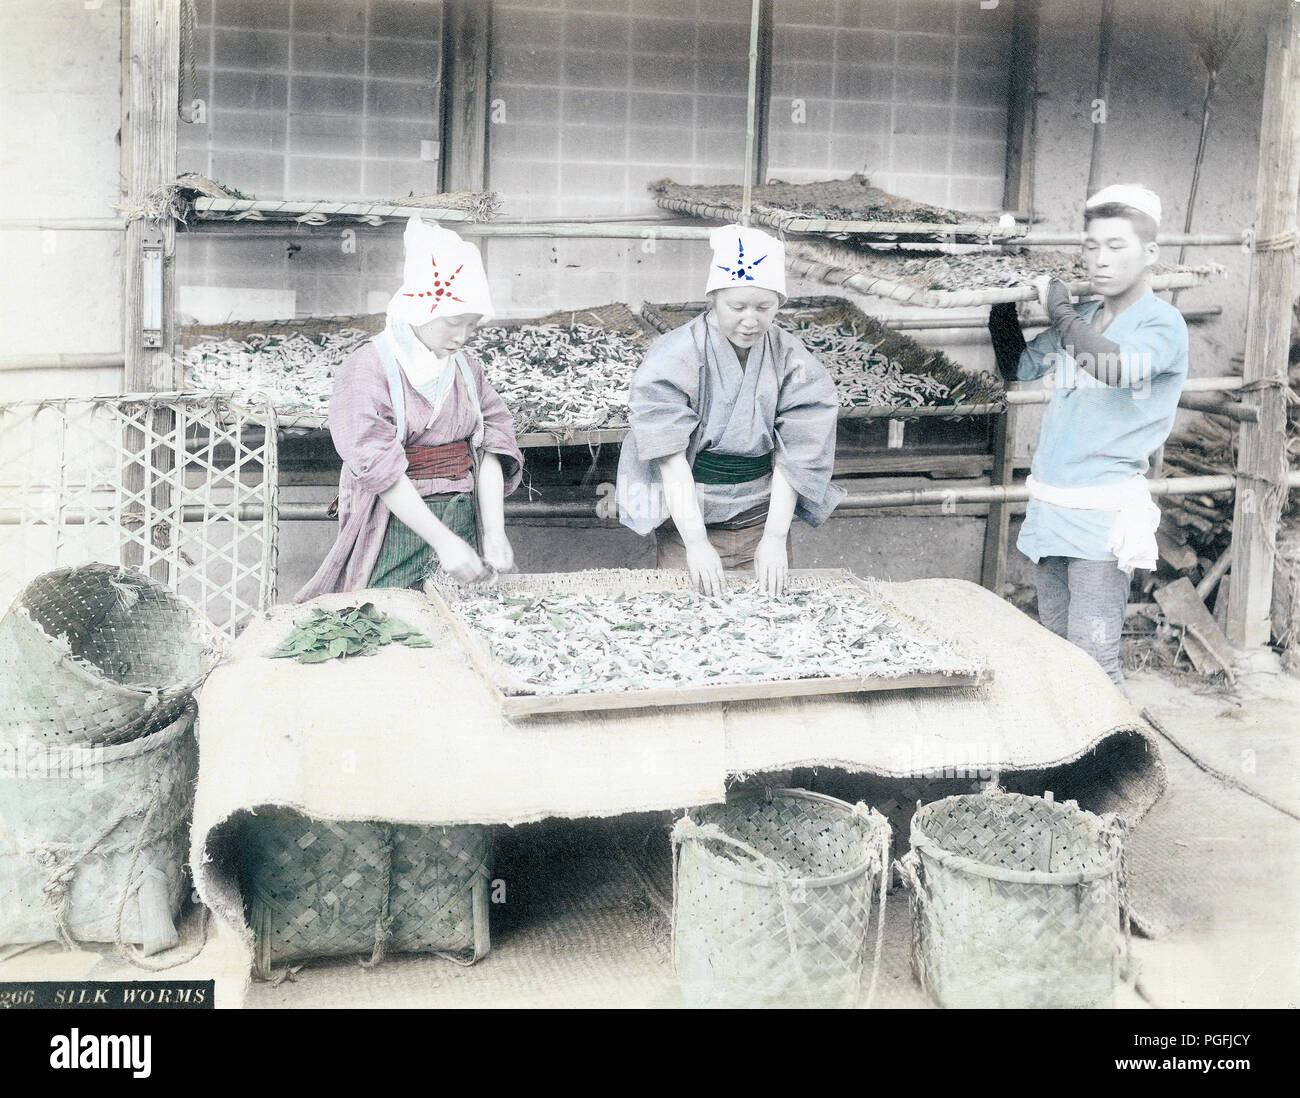 [C. 1880 Japan - Japanische Seide Anbau] - Zwei Frauen arbeiten mit Seidenraupen. 19 Vintage albumen Foto. Stockfoto